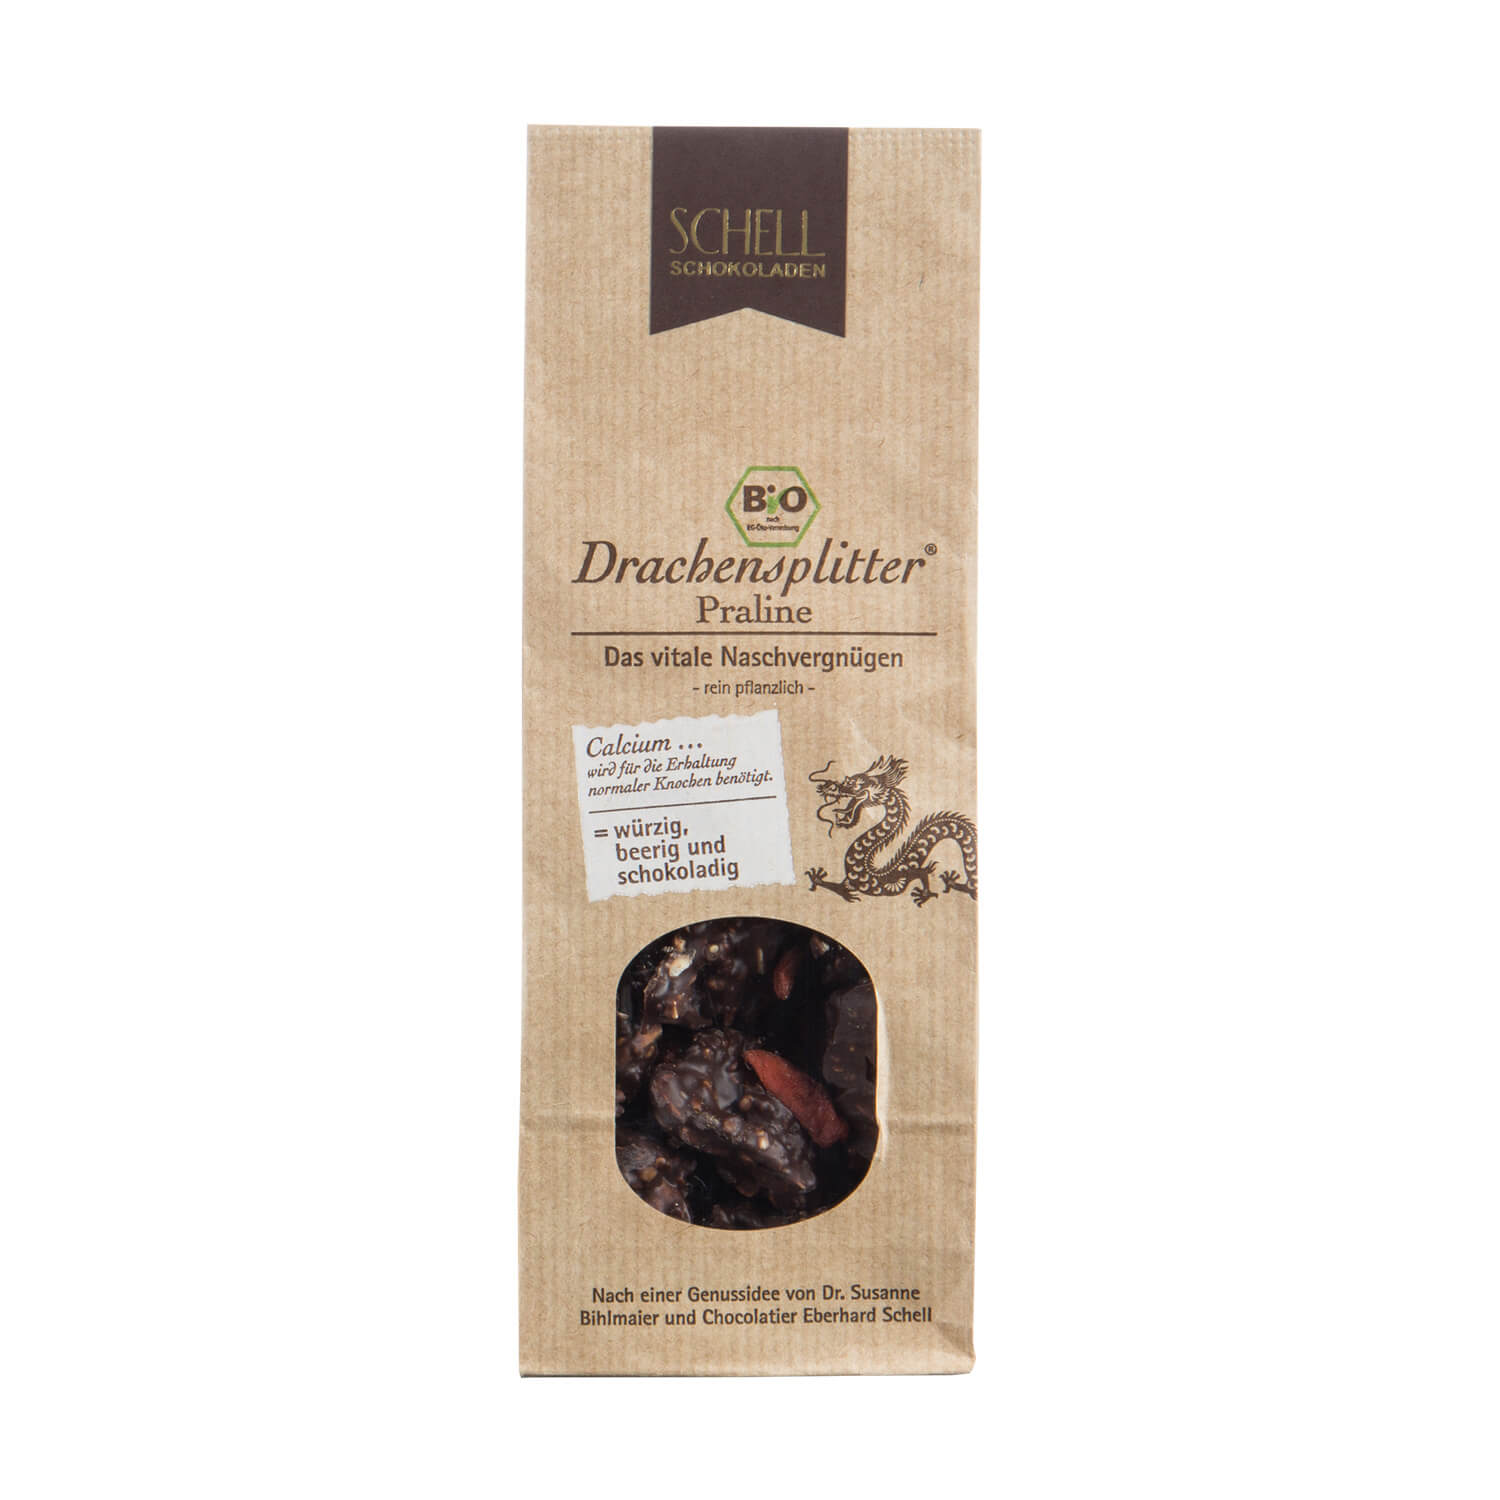 Eine Packung Schell Schokolade namens Drachensplitter mit Bio Siegel